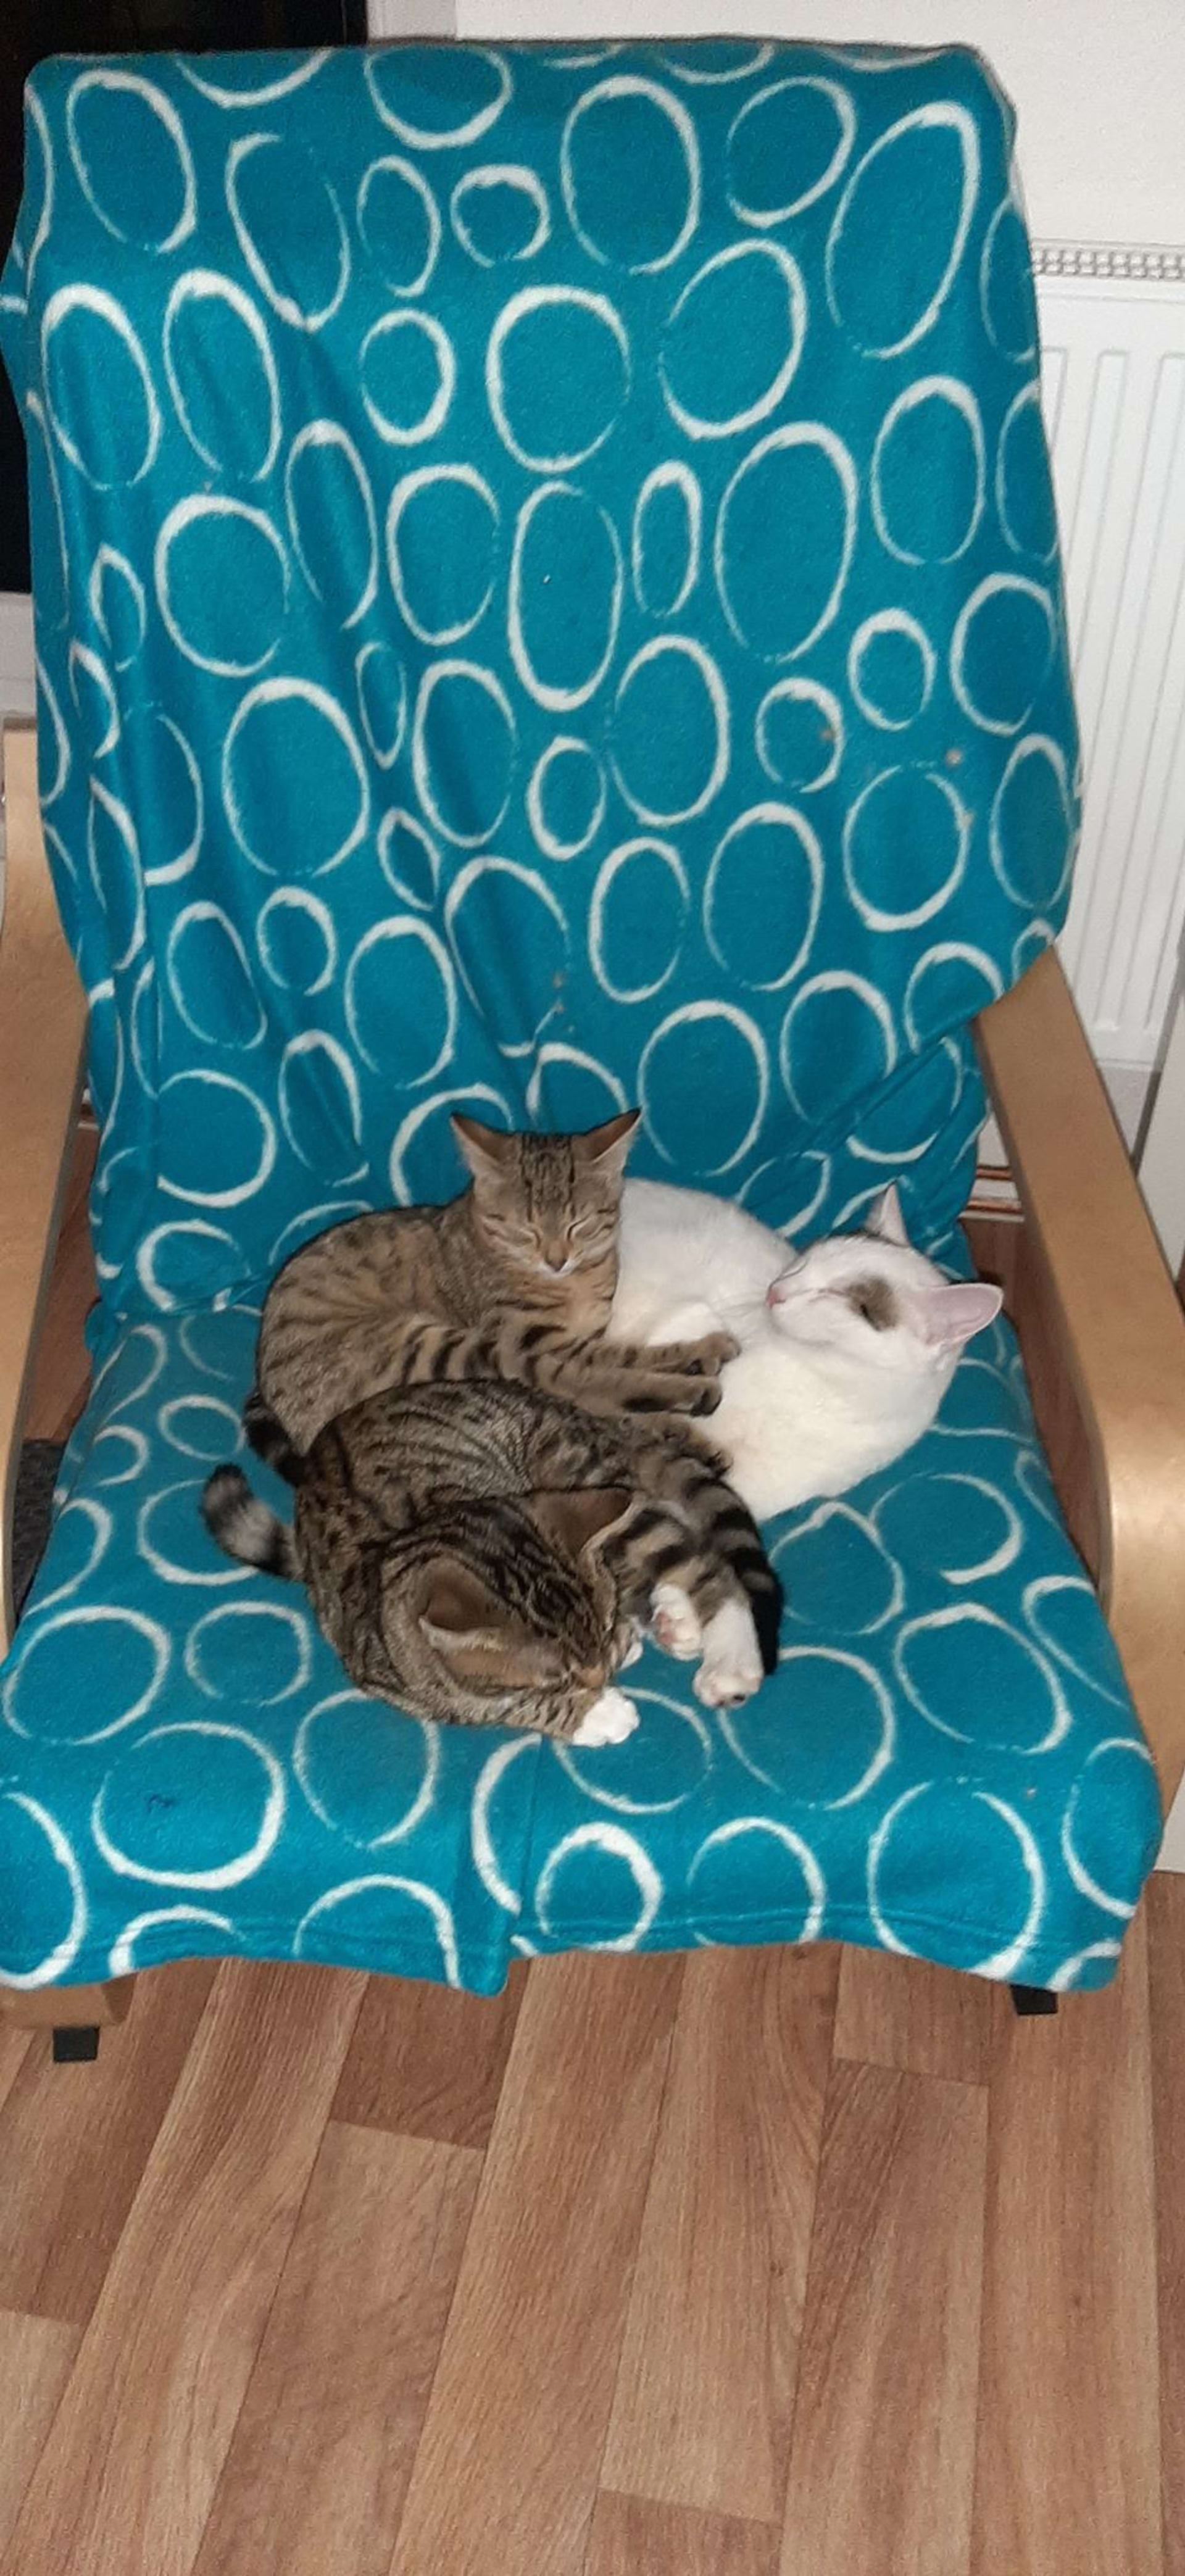 Mourované kočkata Filda a Miky tulící, vrnící s panem Mňoukem